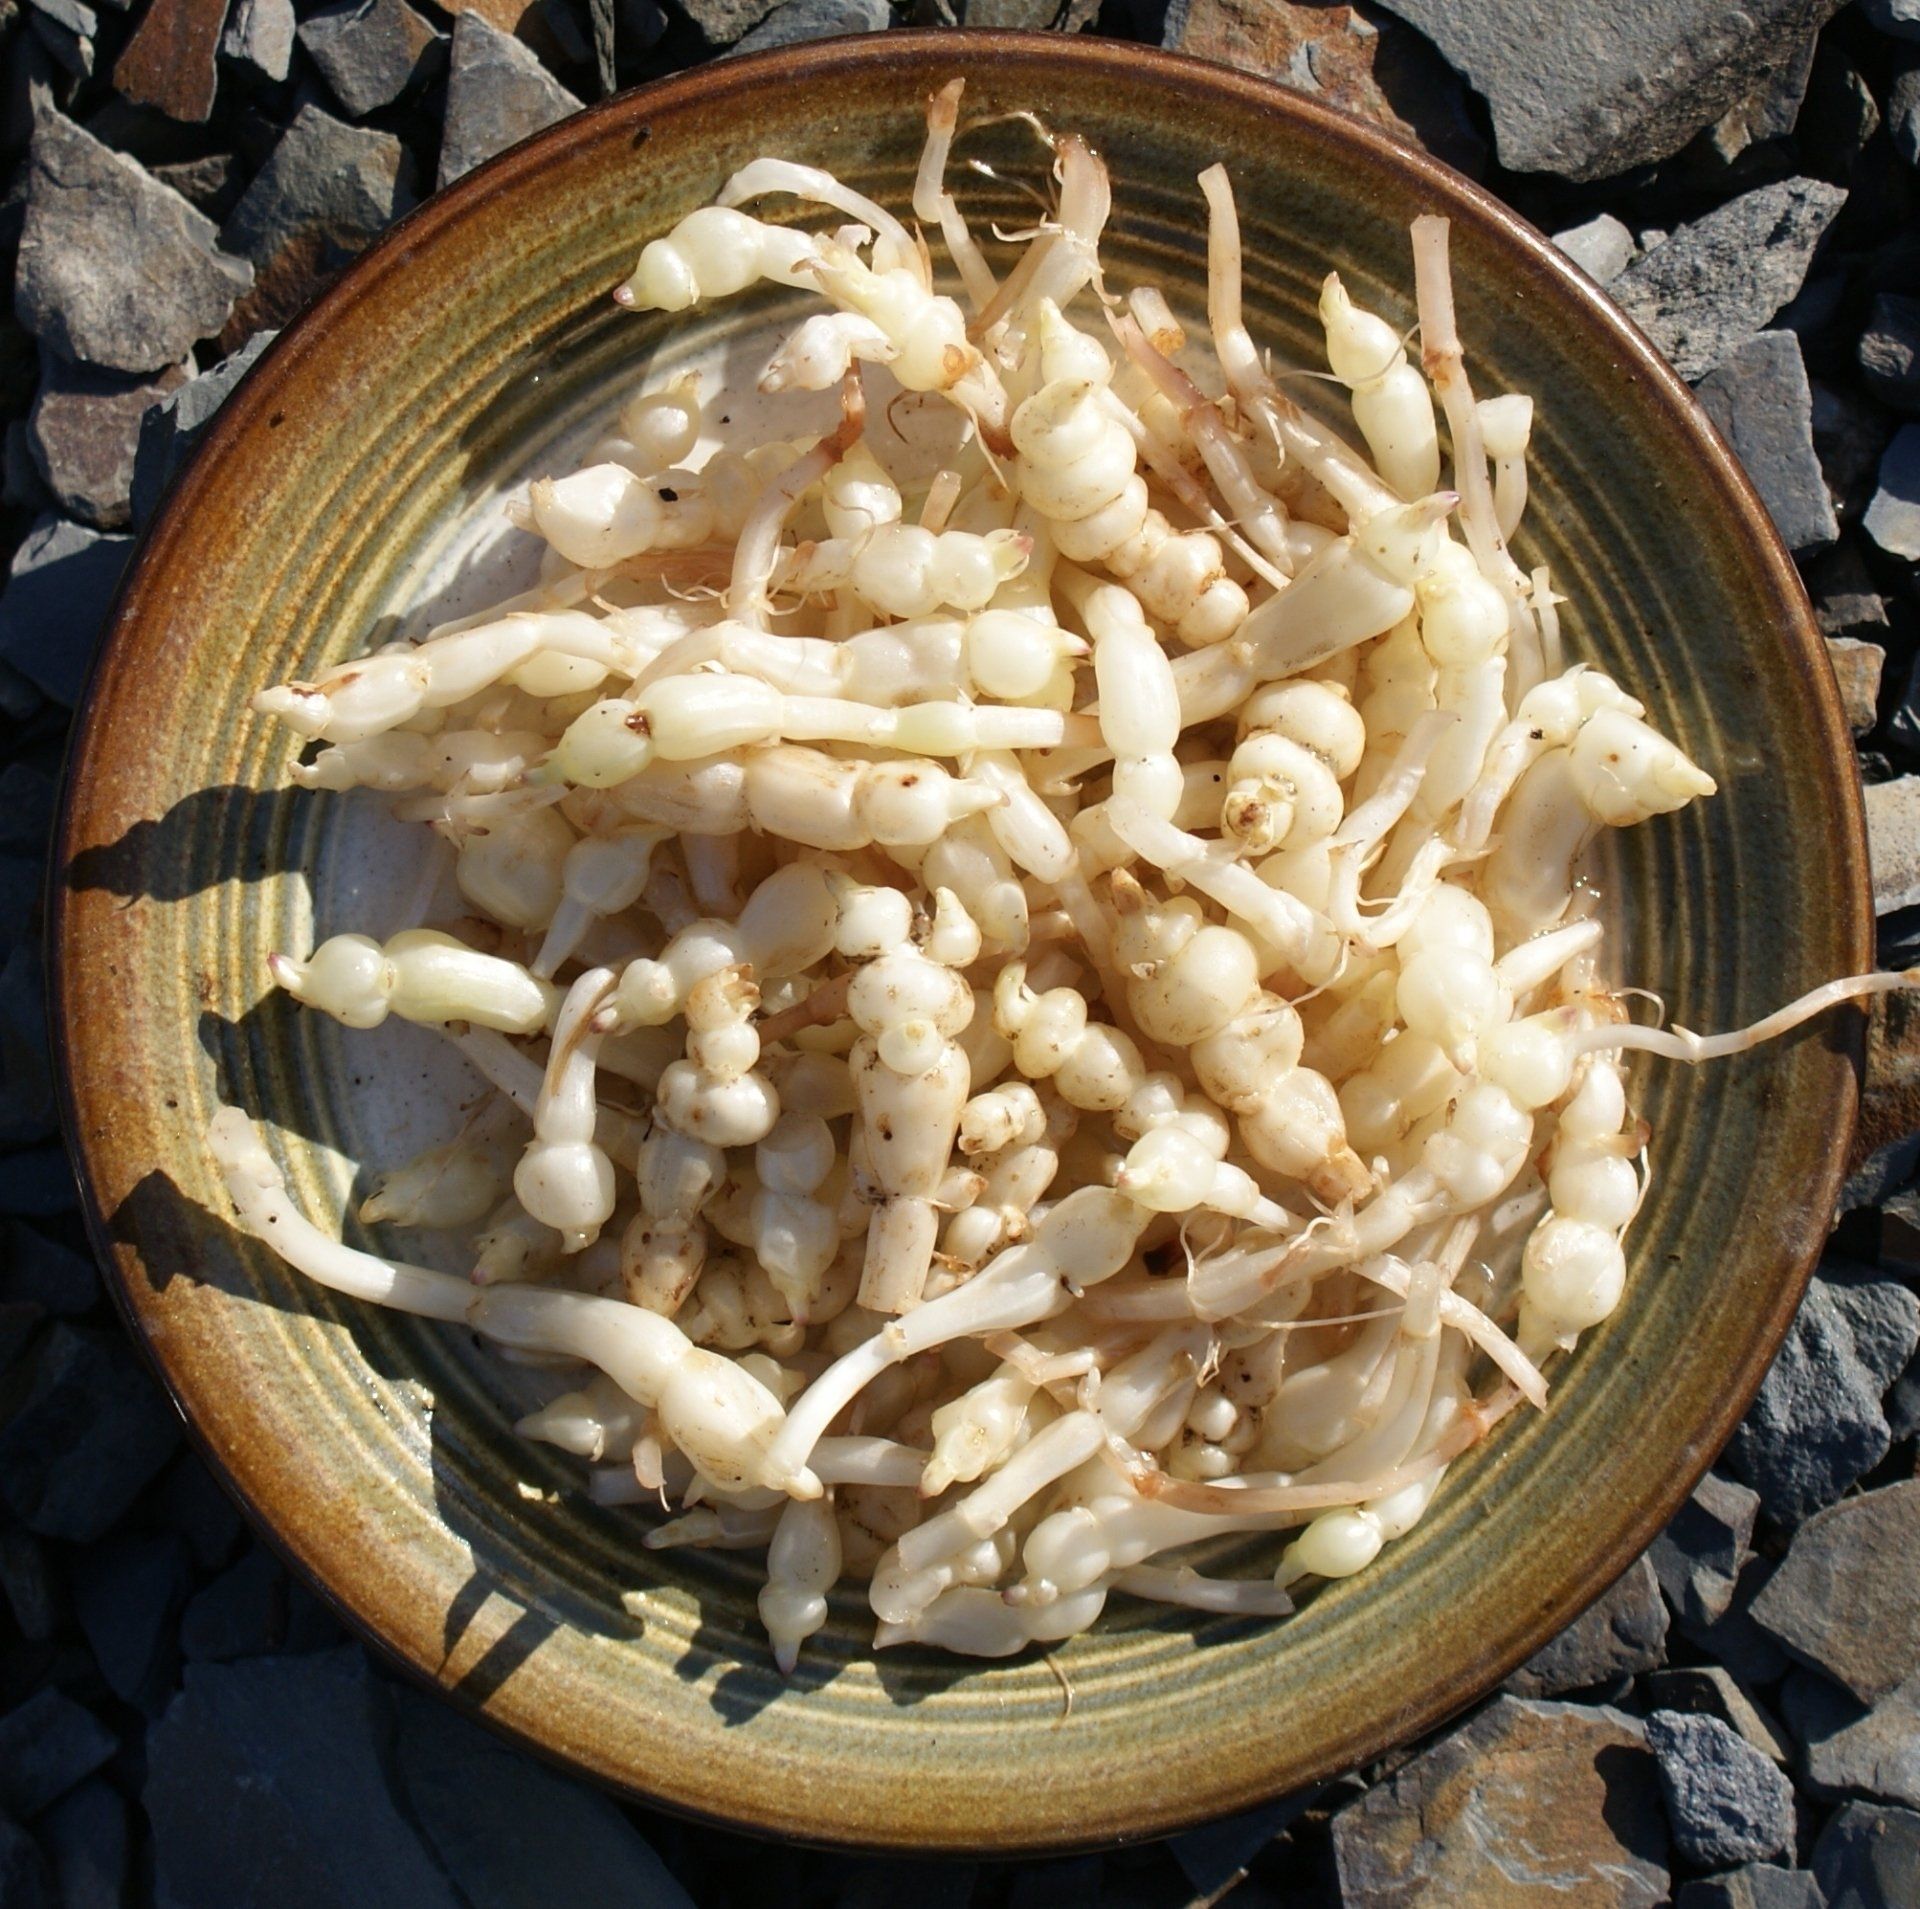 Chinese artichoke